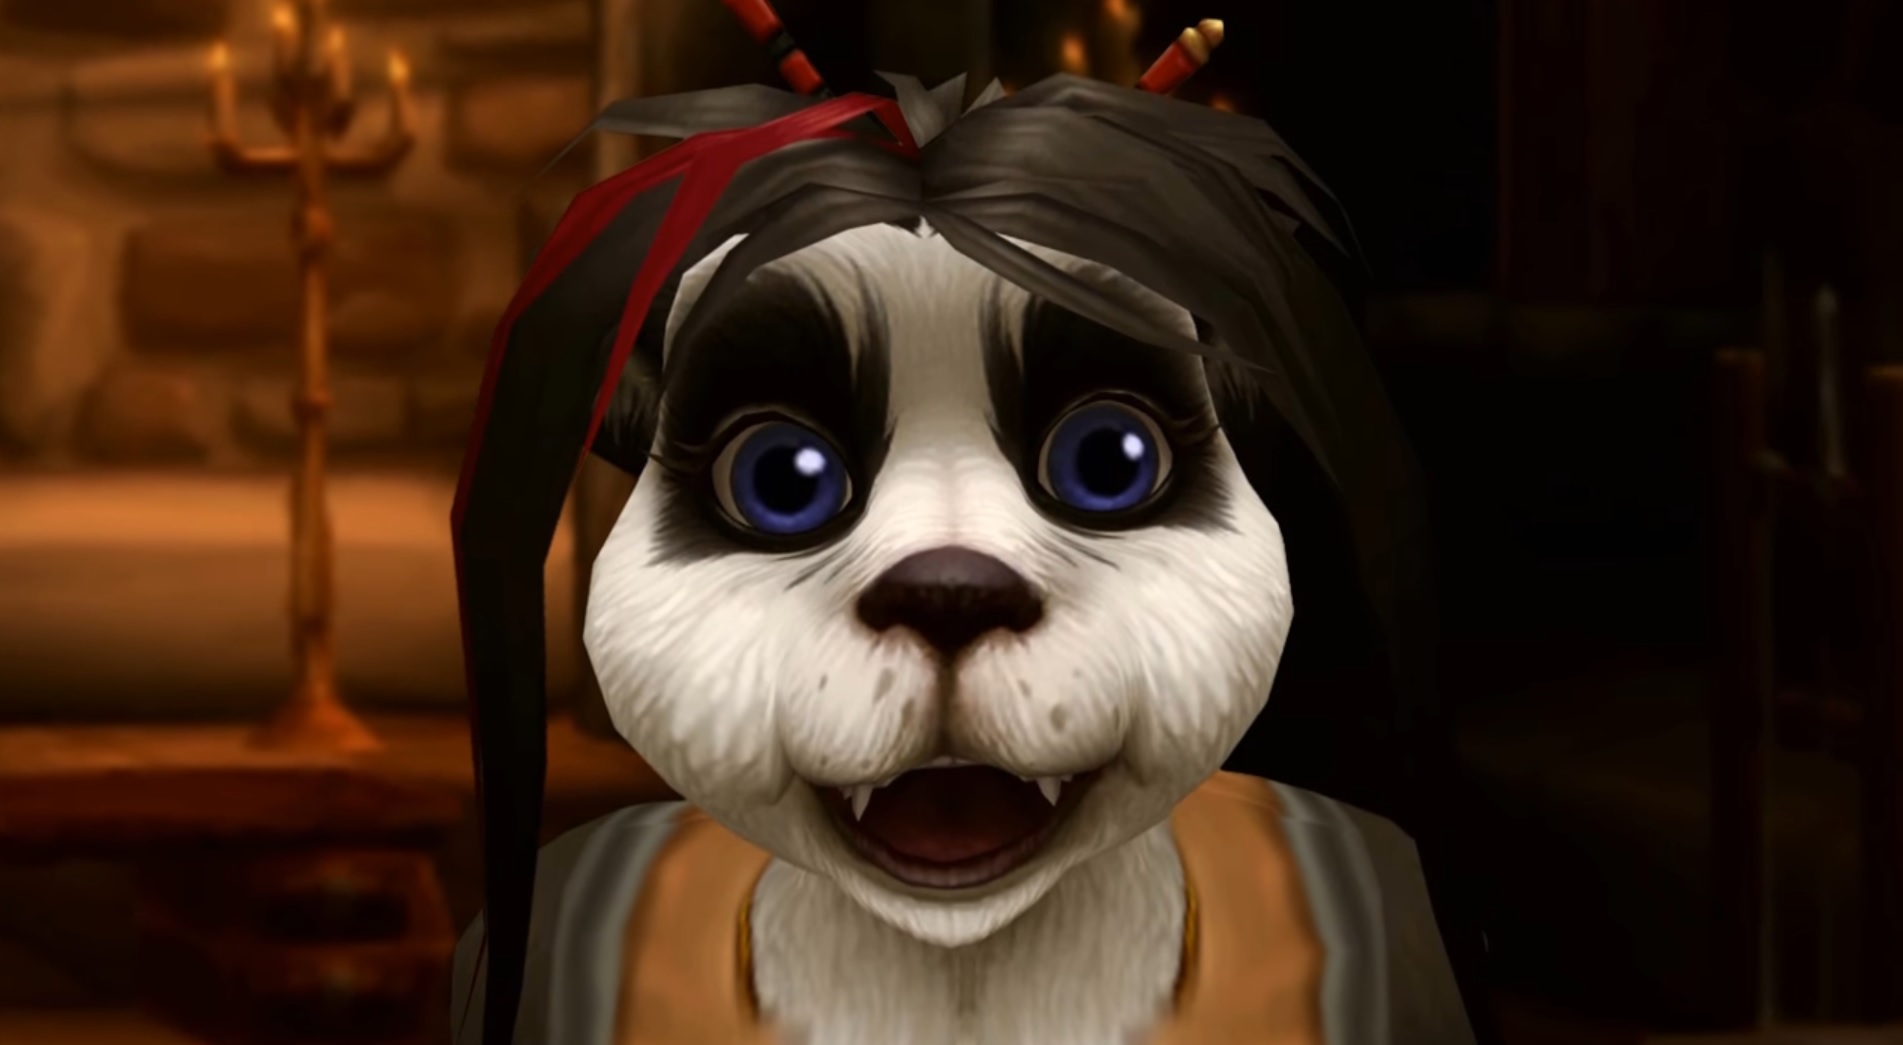 WoW Pandaren Ming-Chu surprised